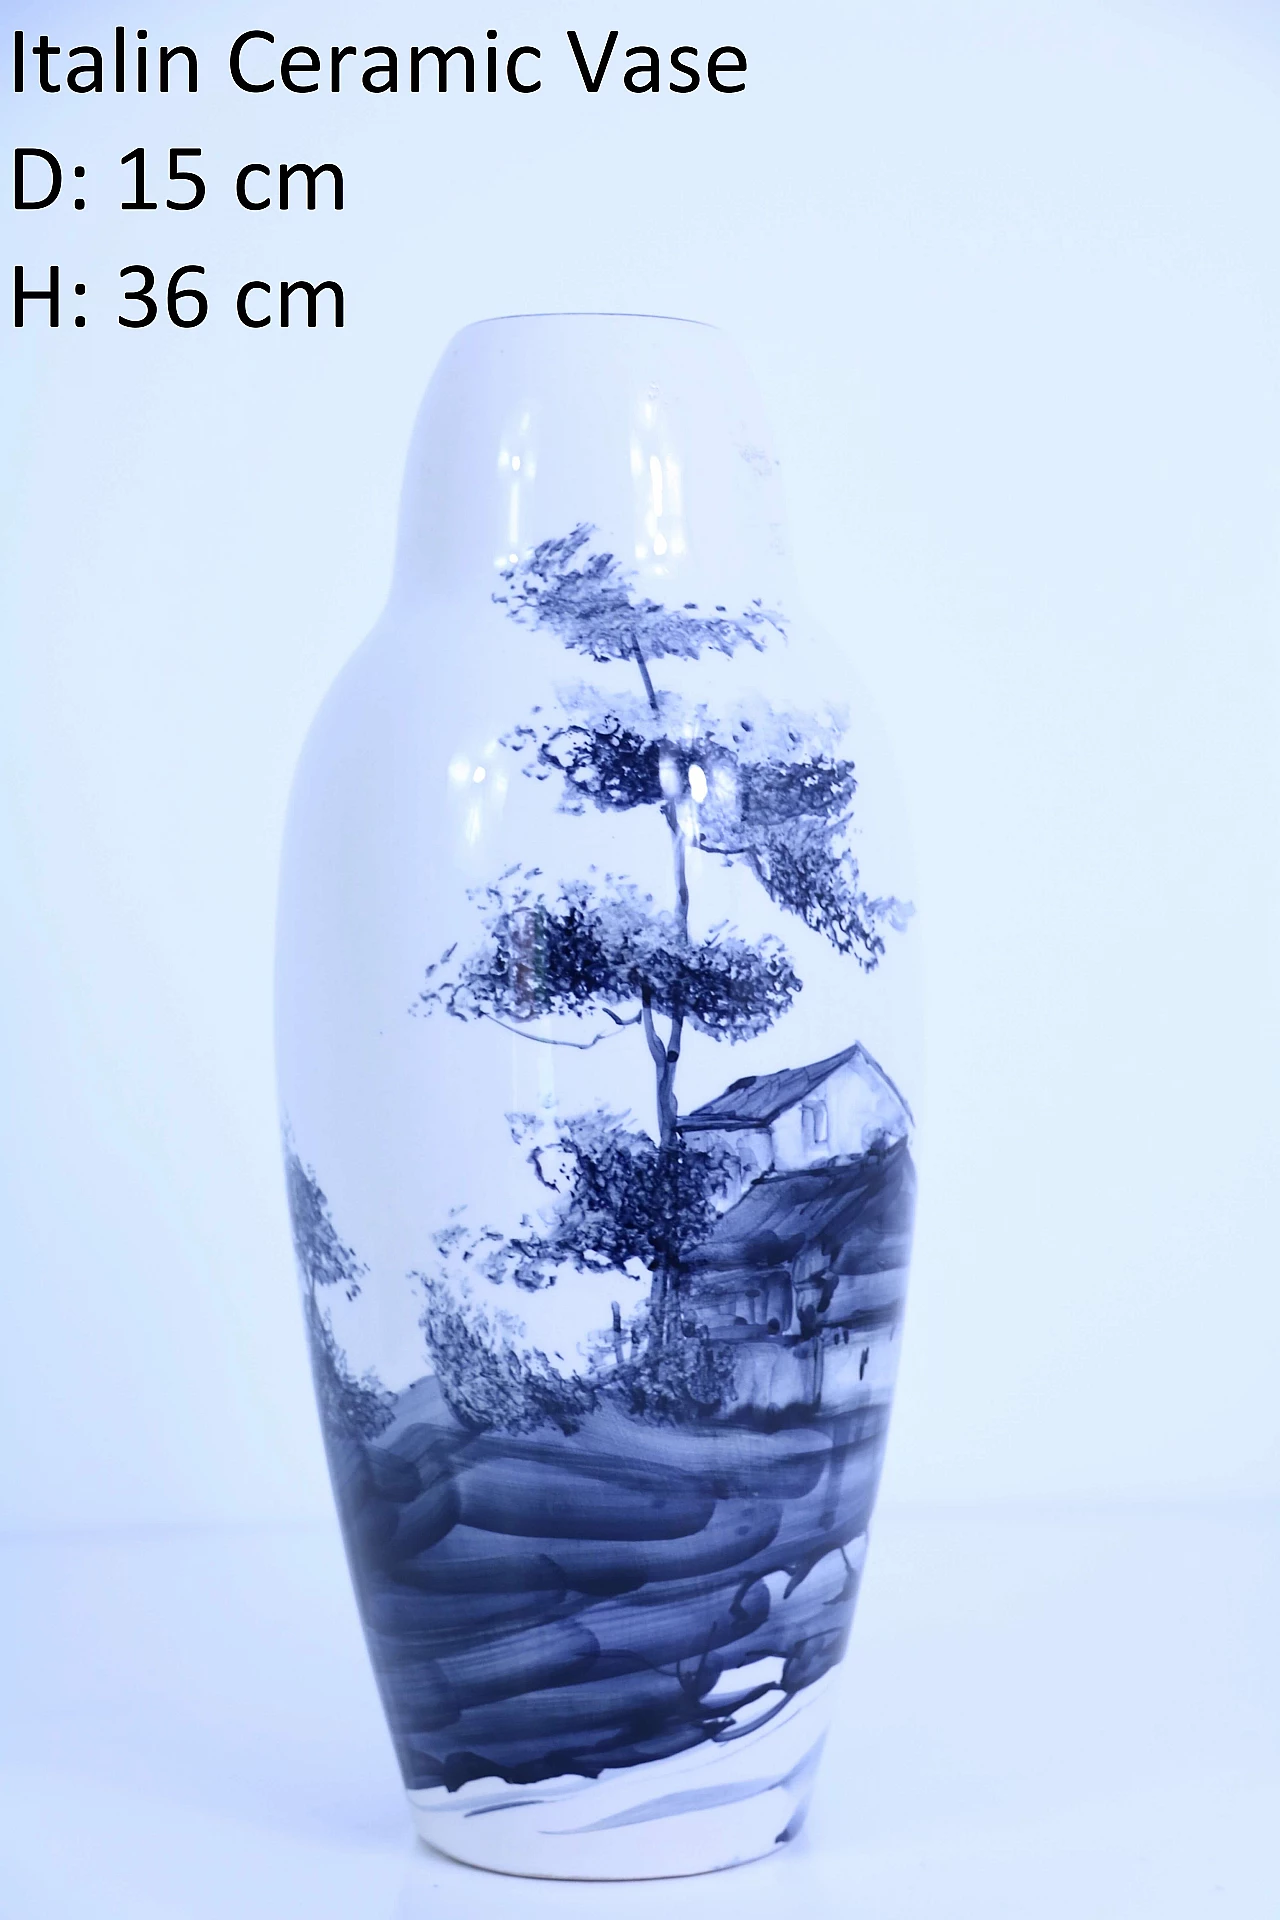 Italian ceramic vase 1126292